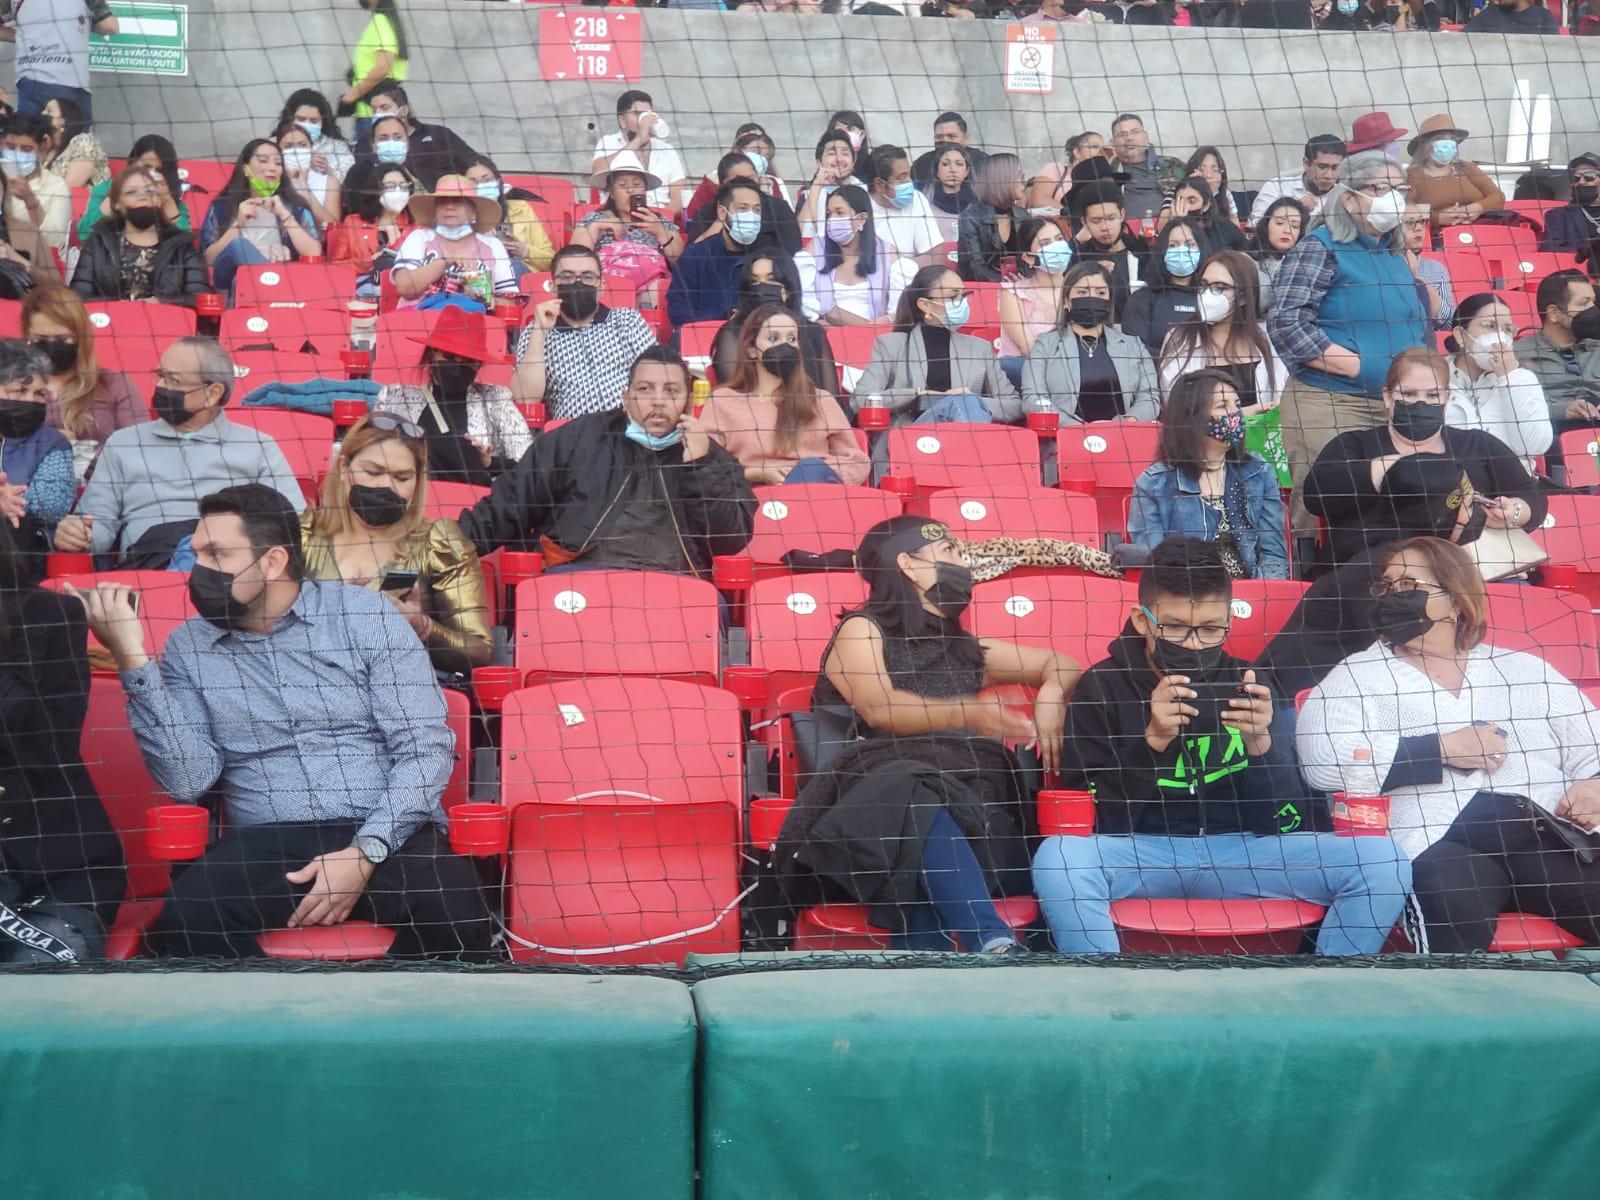 $!Asistentes al Teodoro Mariscal rompen seguros en asientos durante coronaciones del Carnaval de Mazatlán